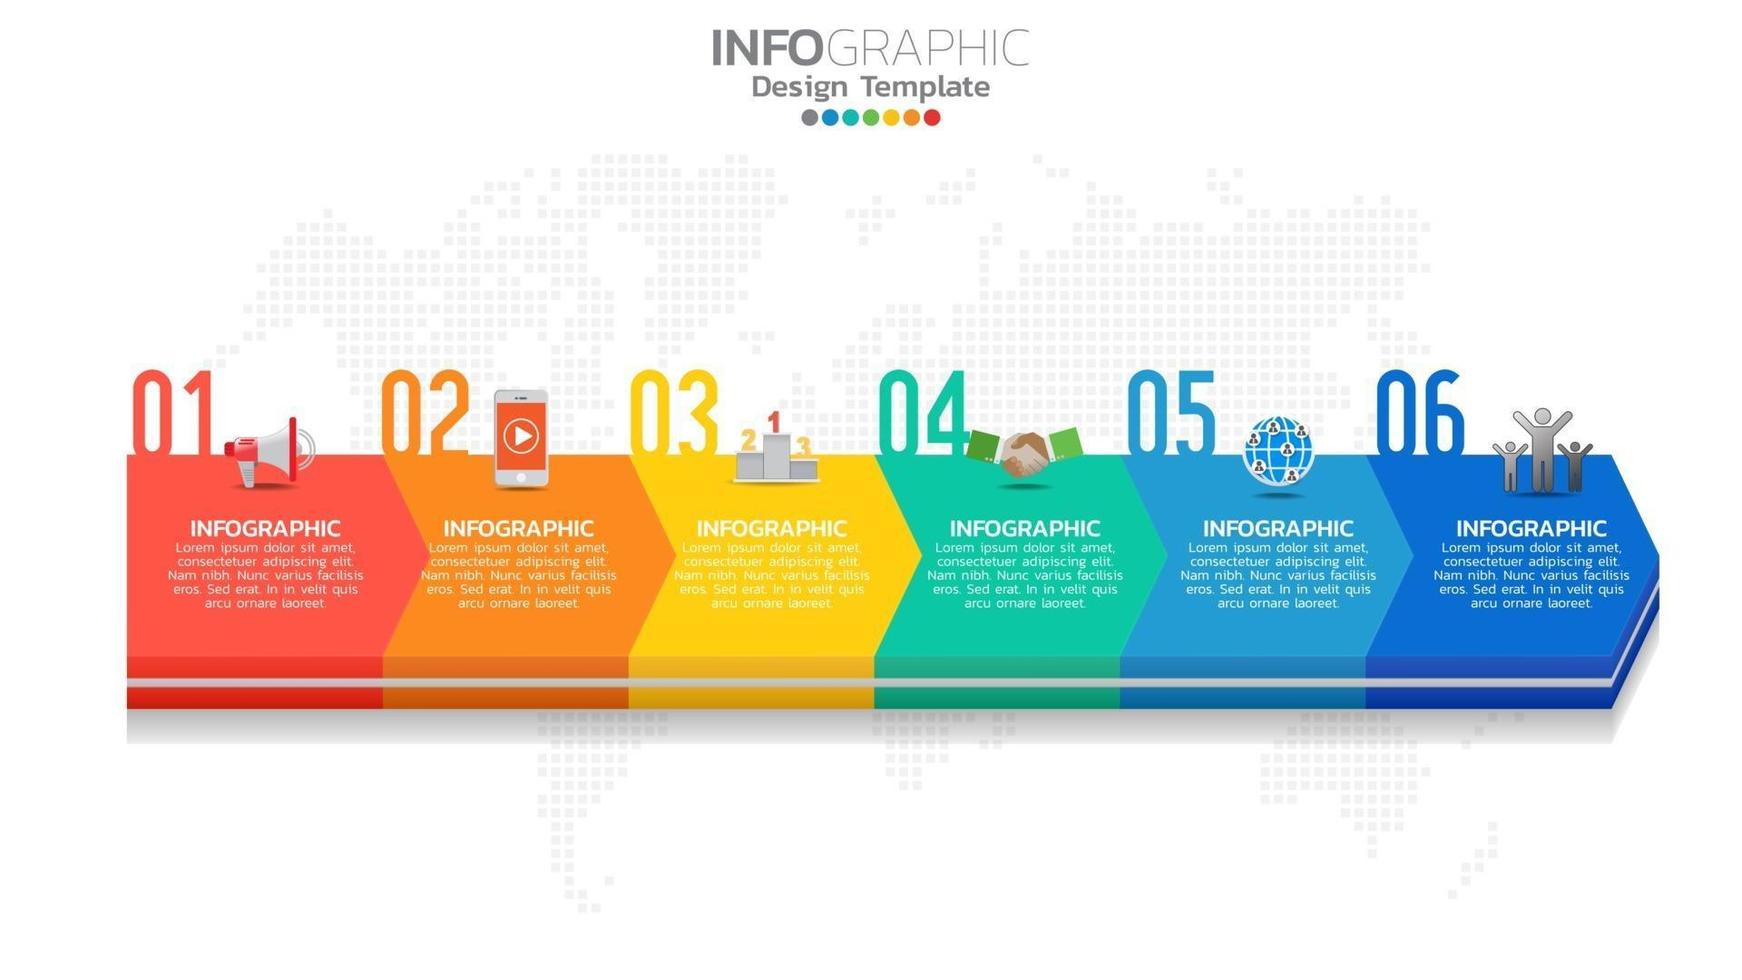 elemento di colore infograph 6 passaggi con freccia, diagramma grafico, concetto di marketing online aziendale. vettore